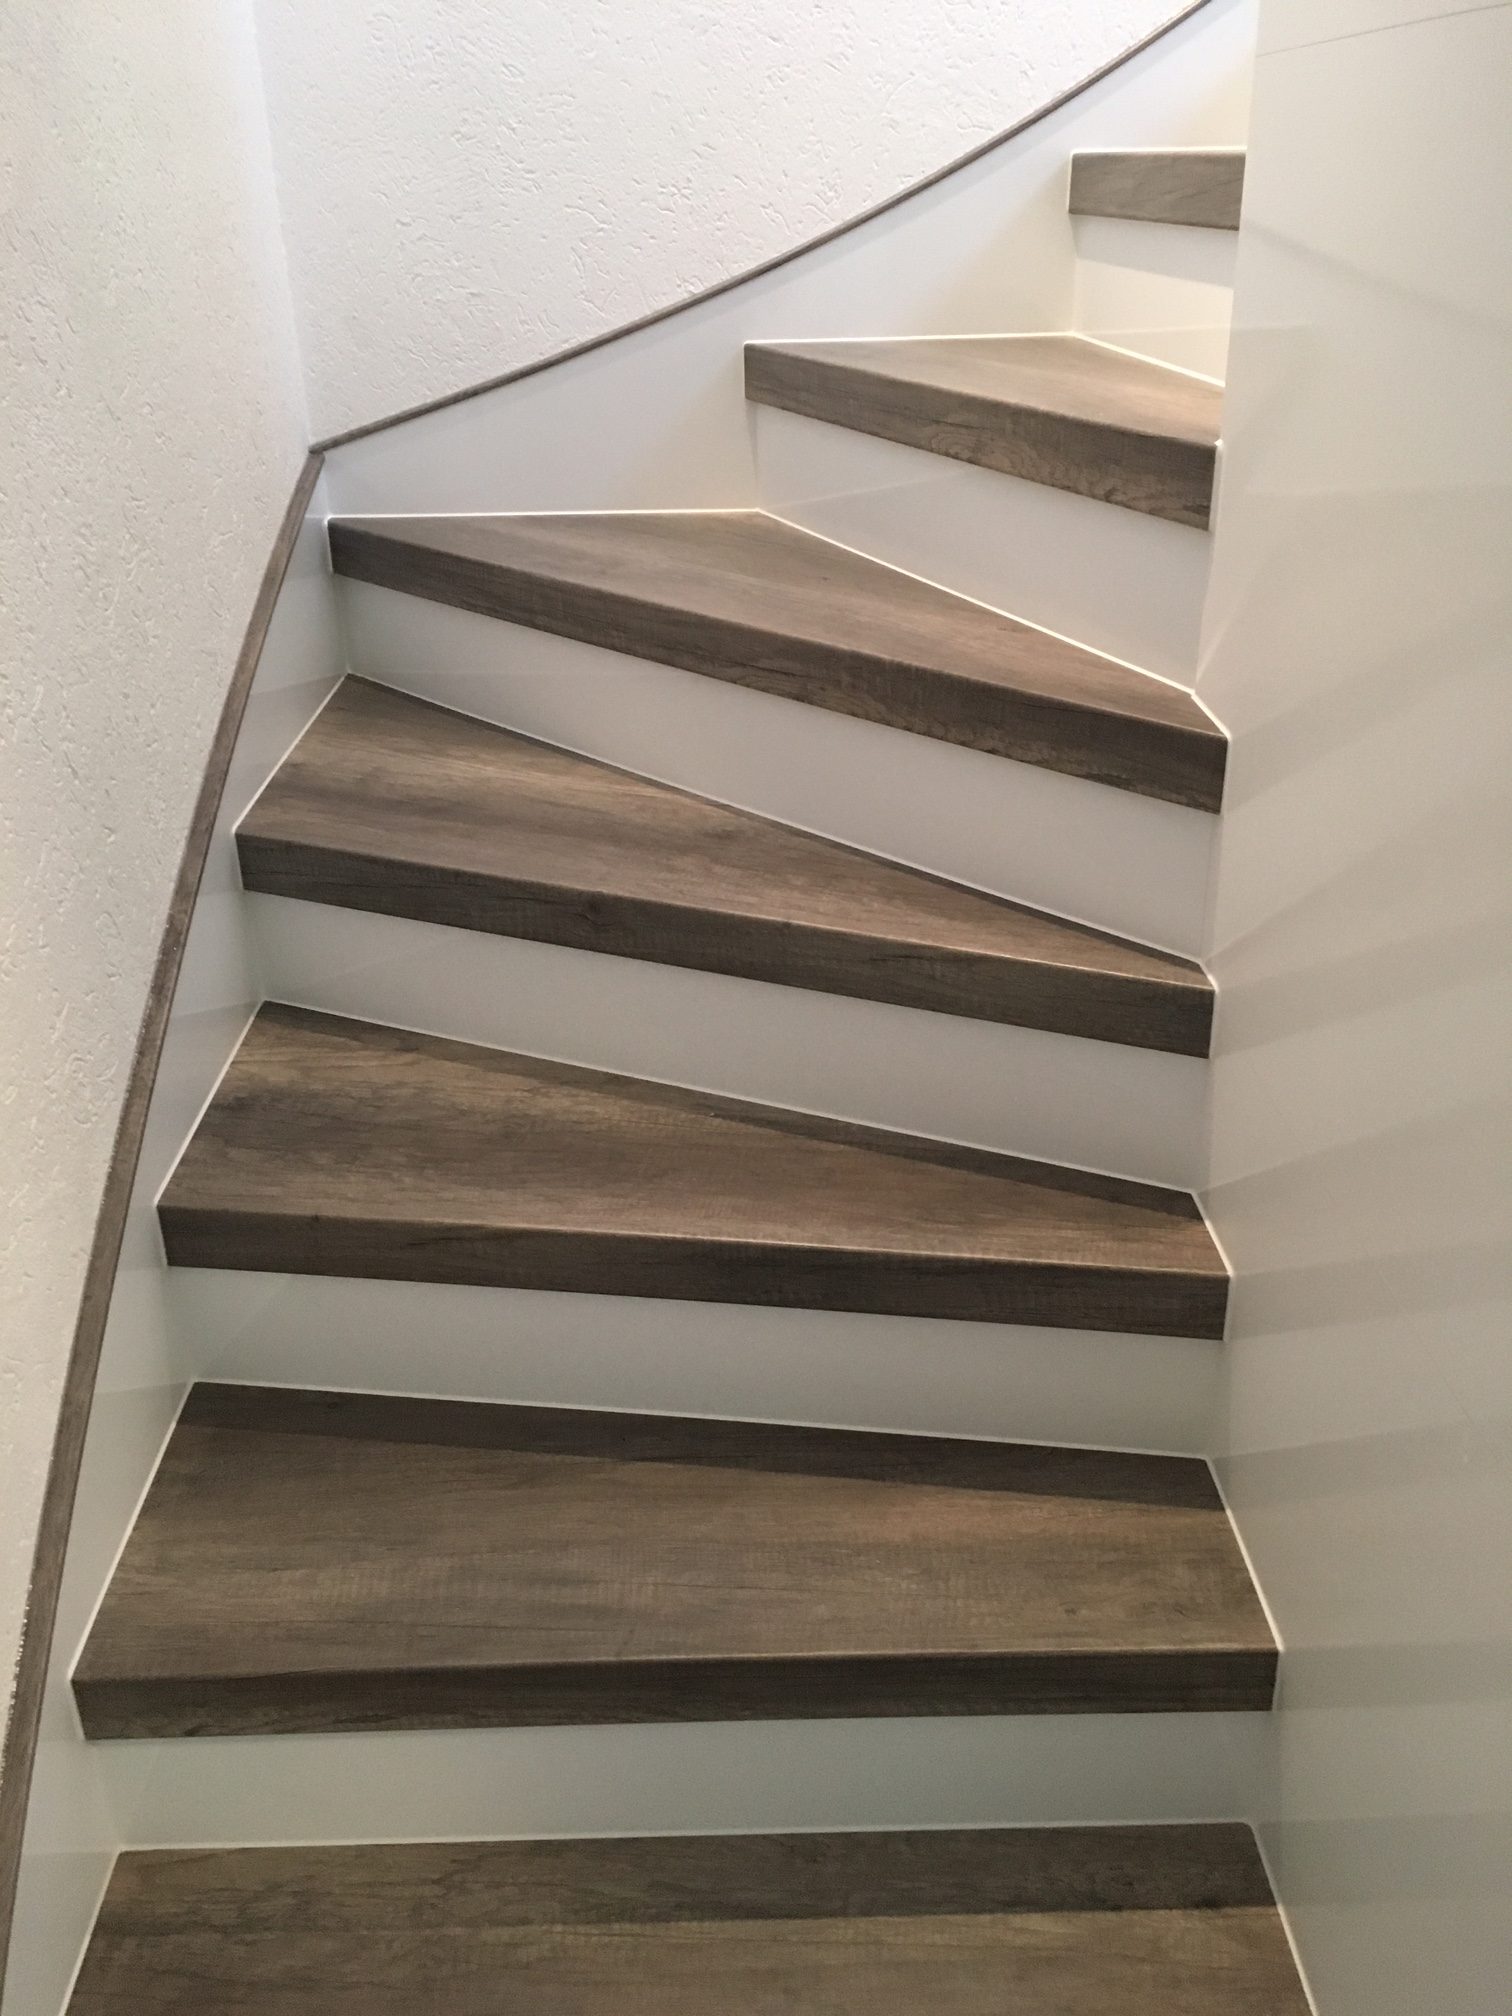 Offene Treppe verkleiden mit Laminatstufen - Treppen-Renovierungen Schran